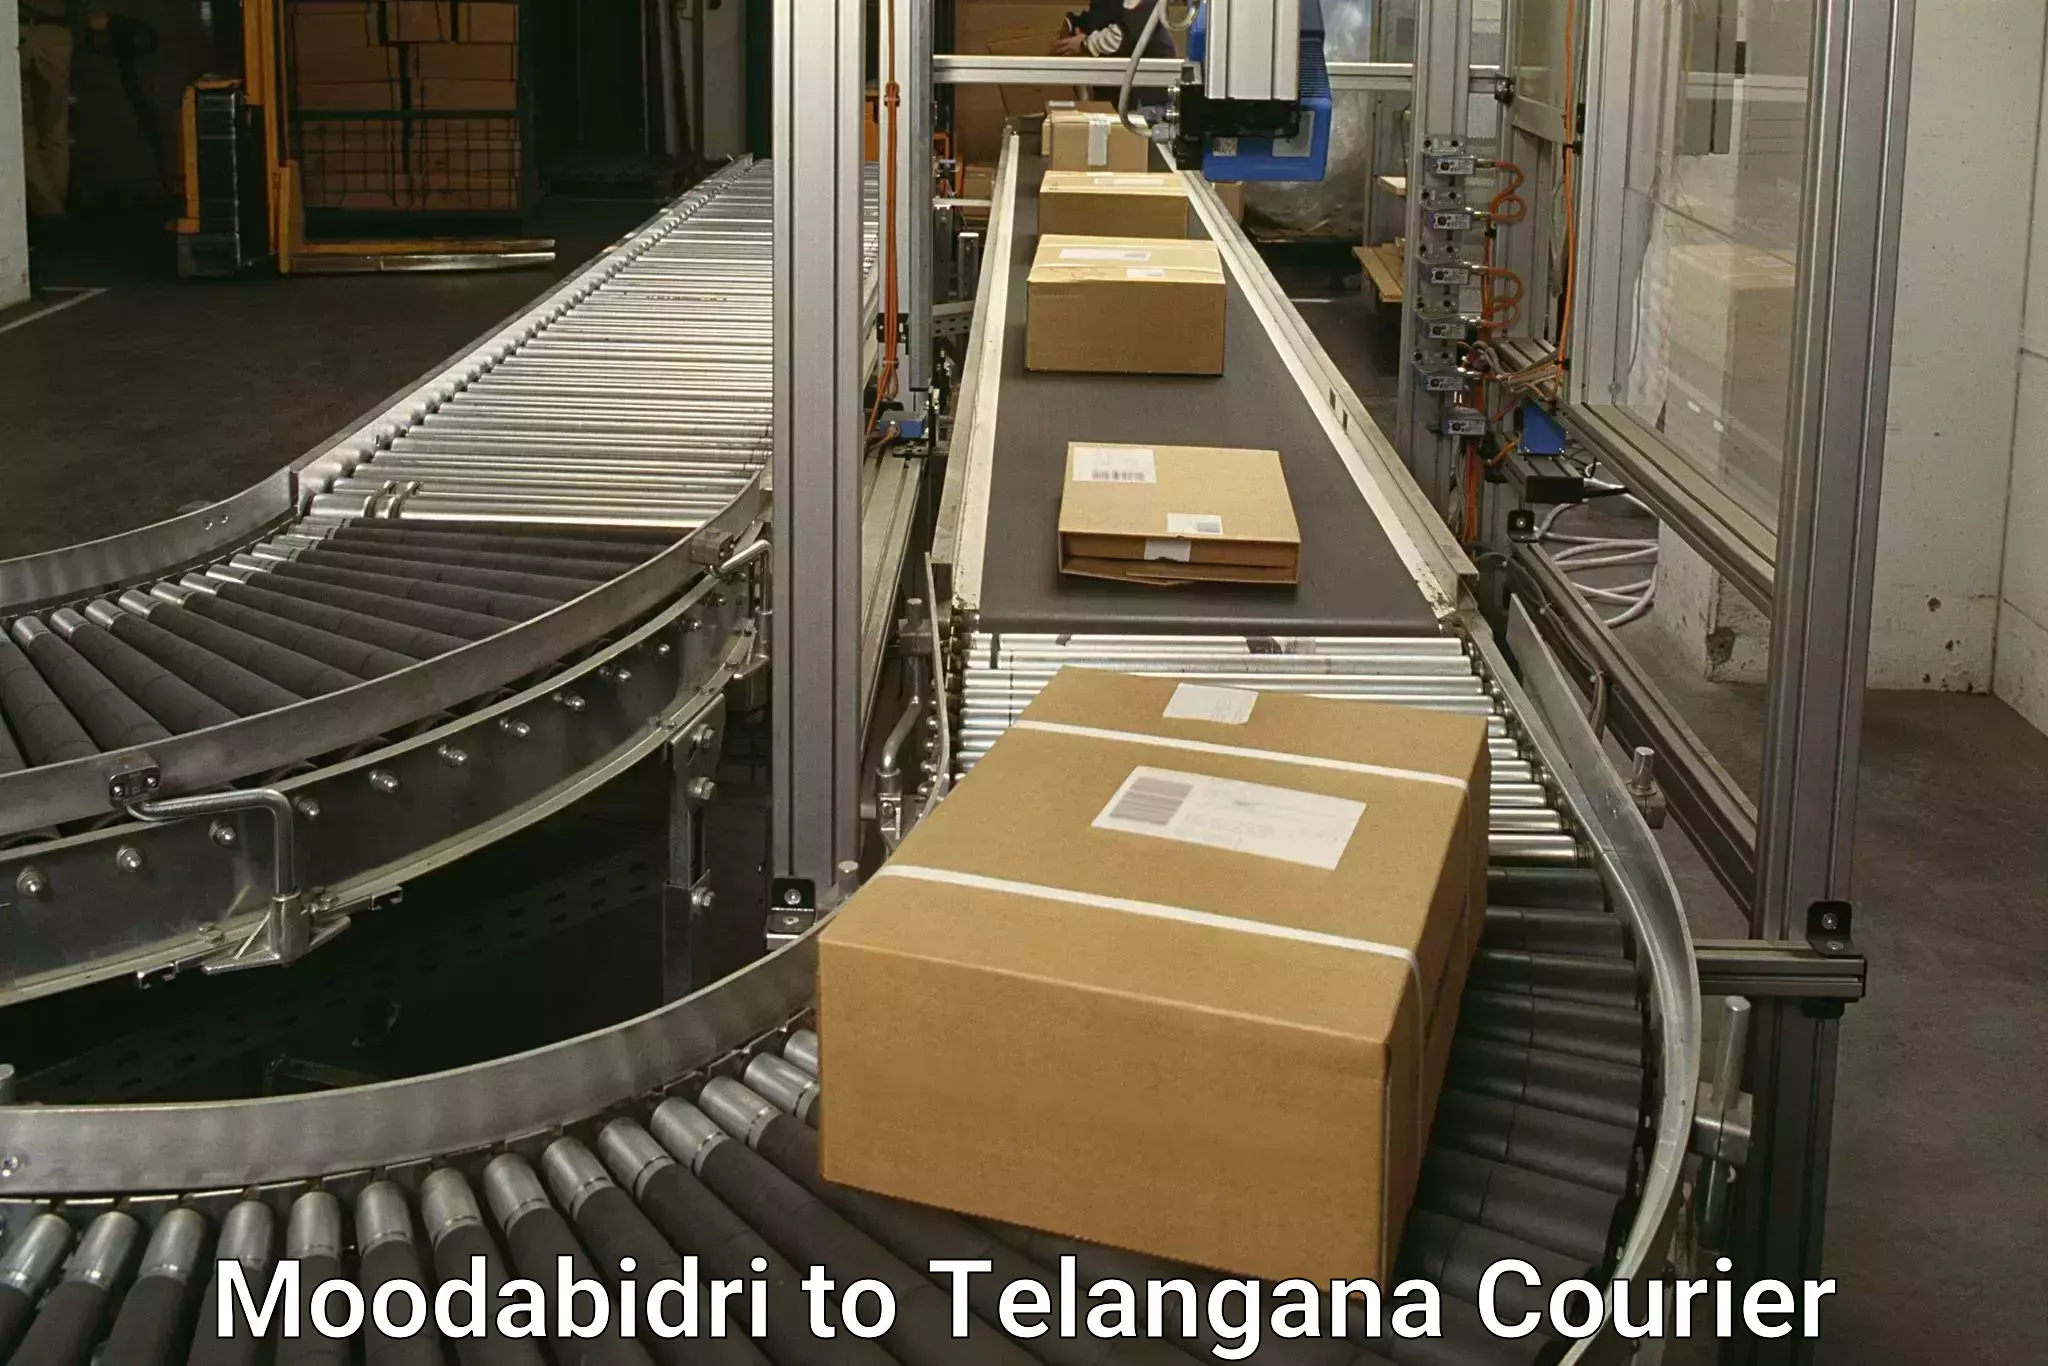 Fast shipping solutions Moodabidri to Mahabubnagar